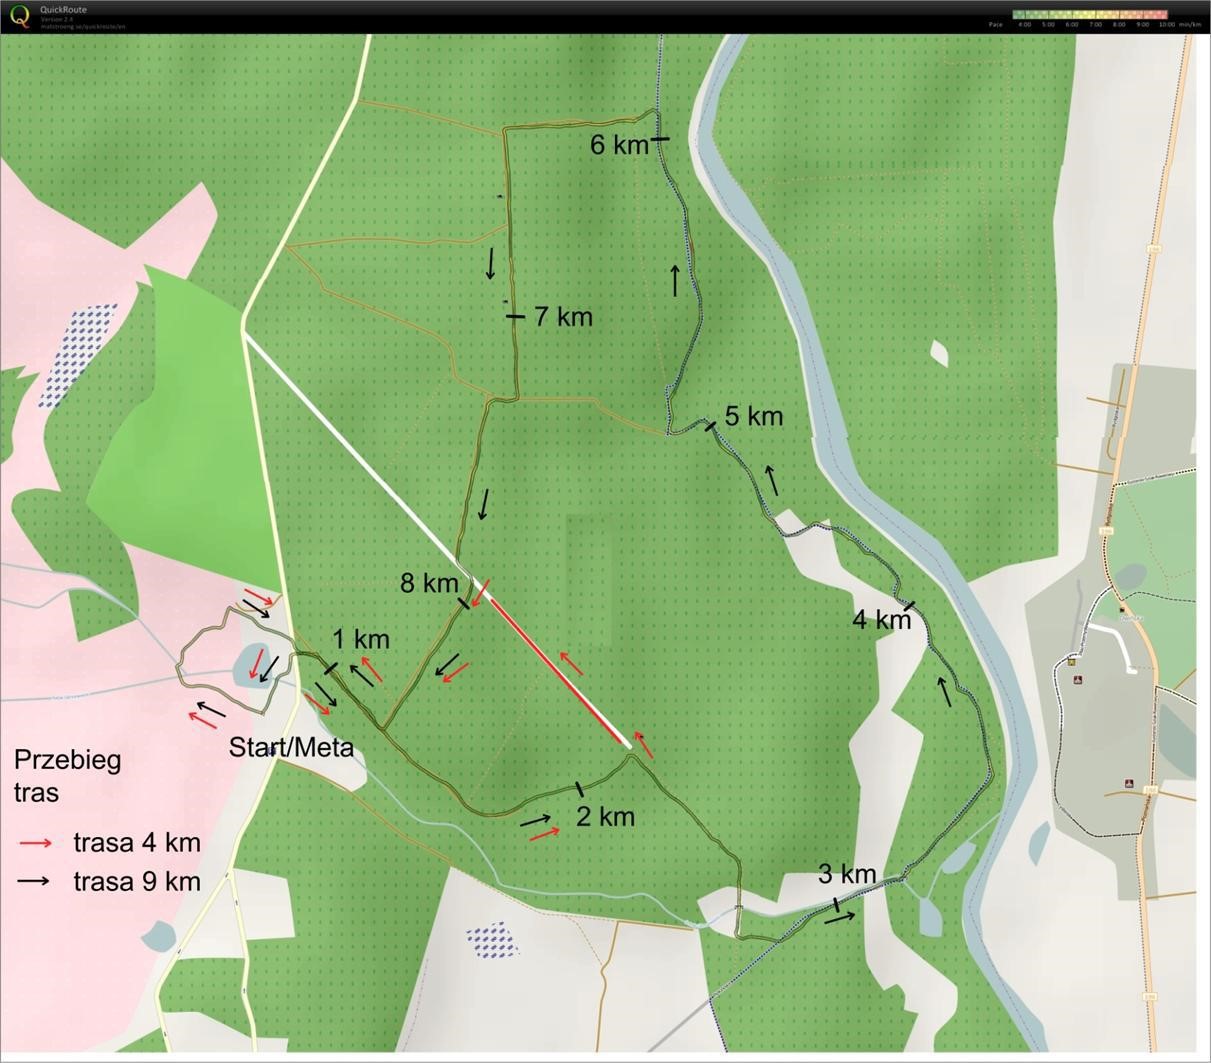 MAPA BIEGU - 1 PĘTLA 9 km, PĘTLA krótka 4 km. Źródło: Biegamy w lesie